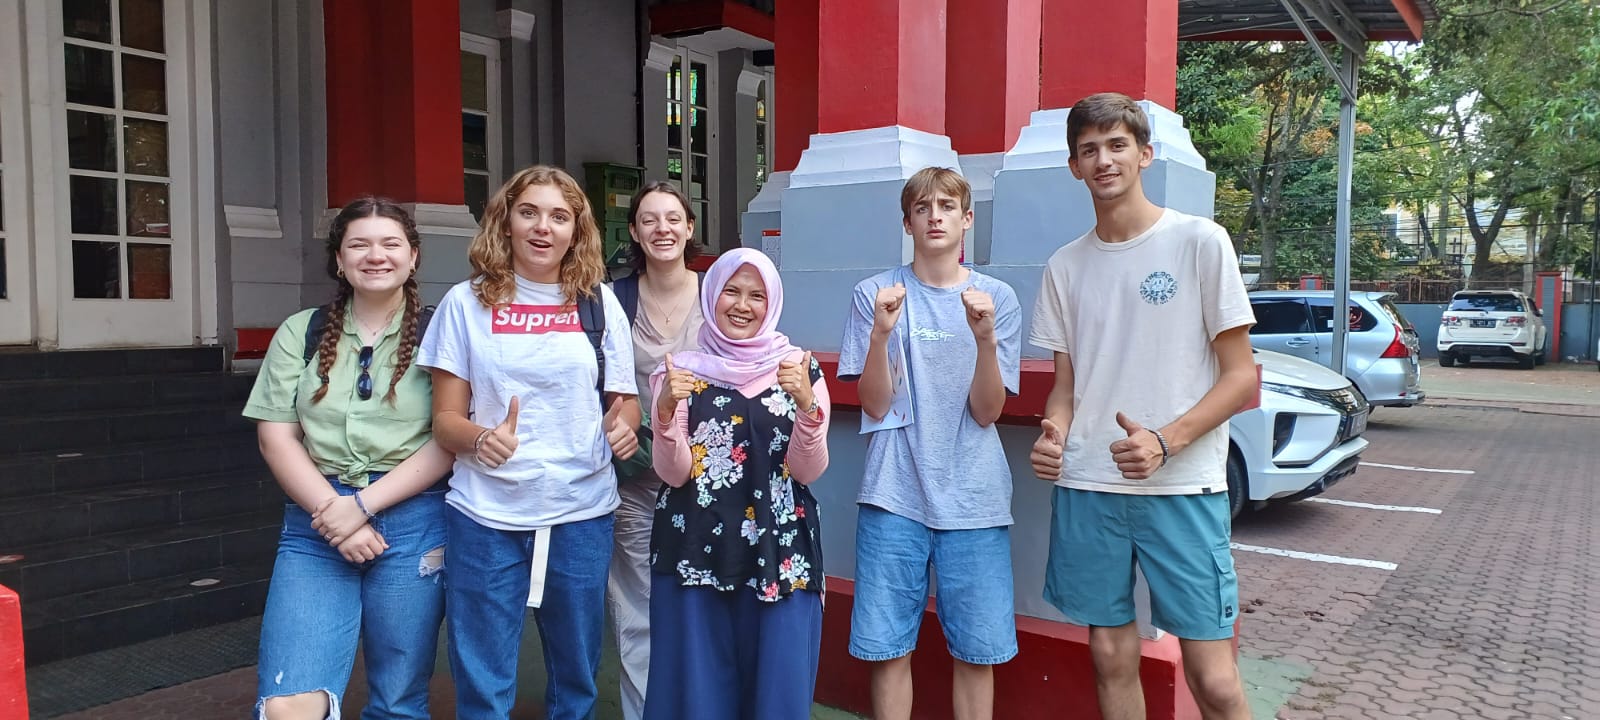 kunjungan lima siswa-siswi asal Perancis dan Belgia peserta Program Pertukaran Pelajar atau Youth Exchange